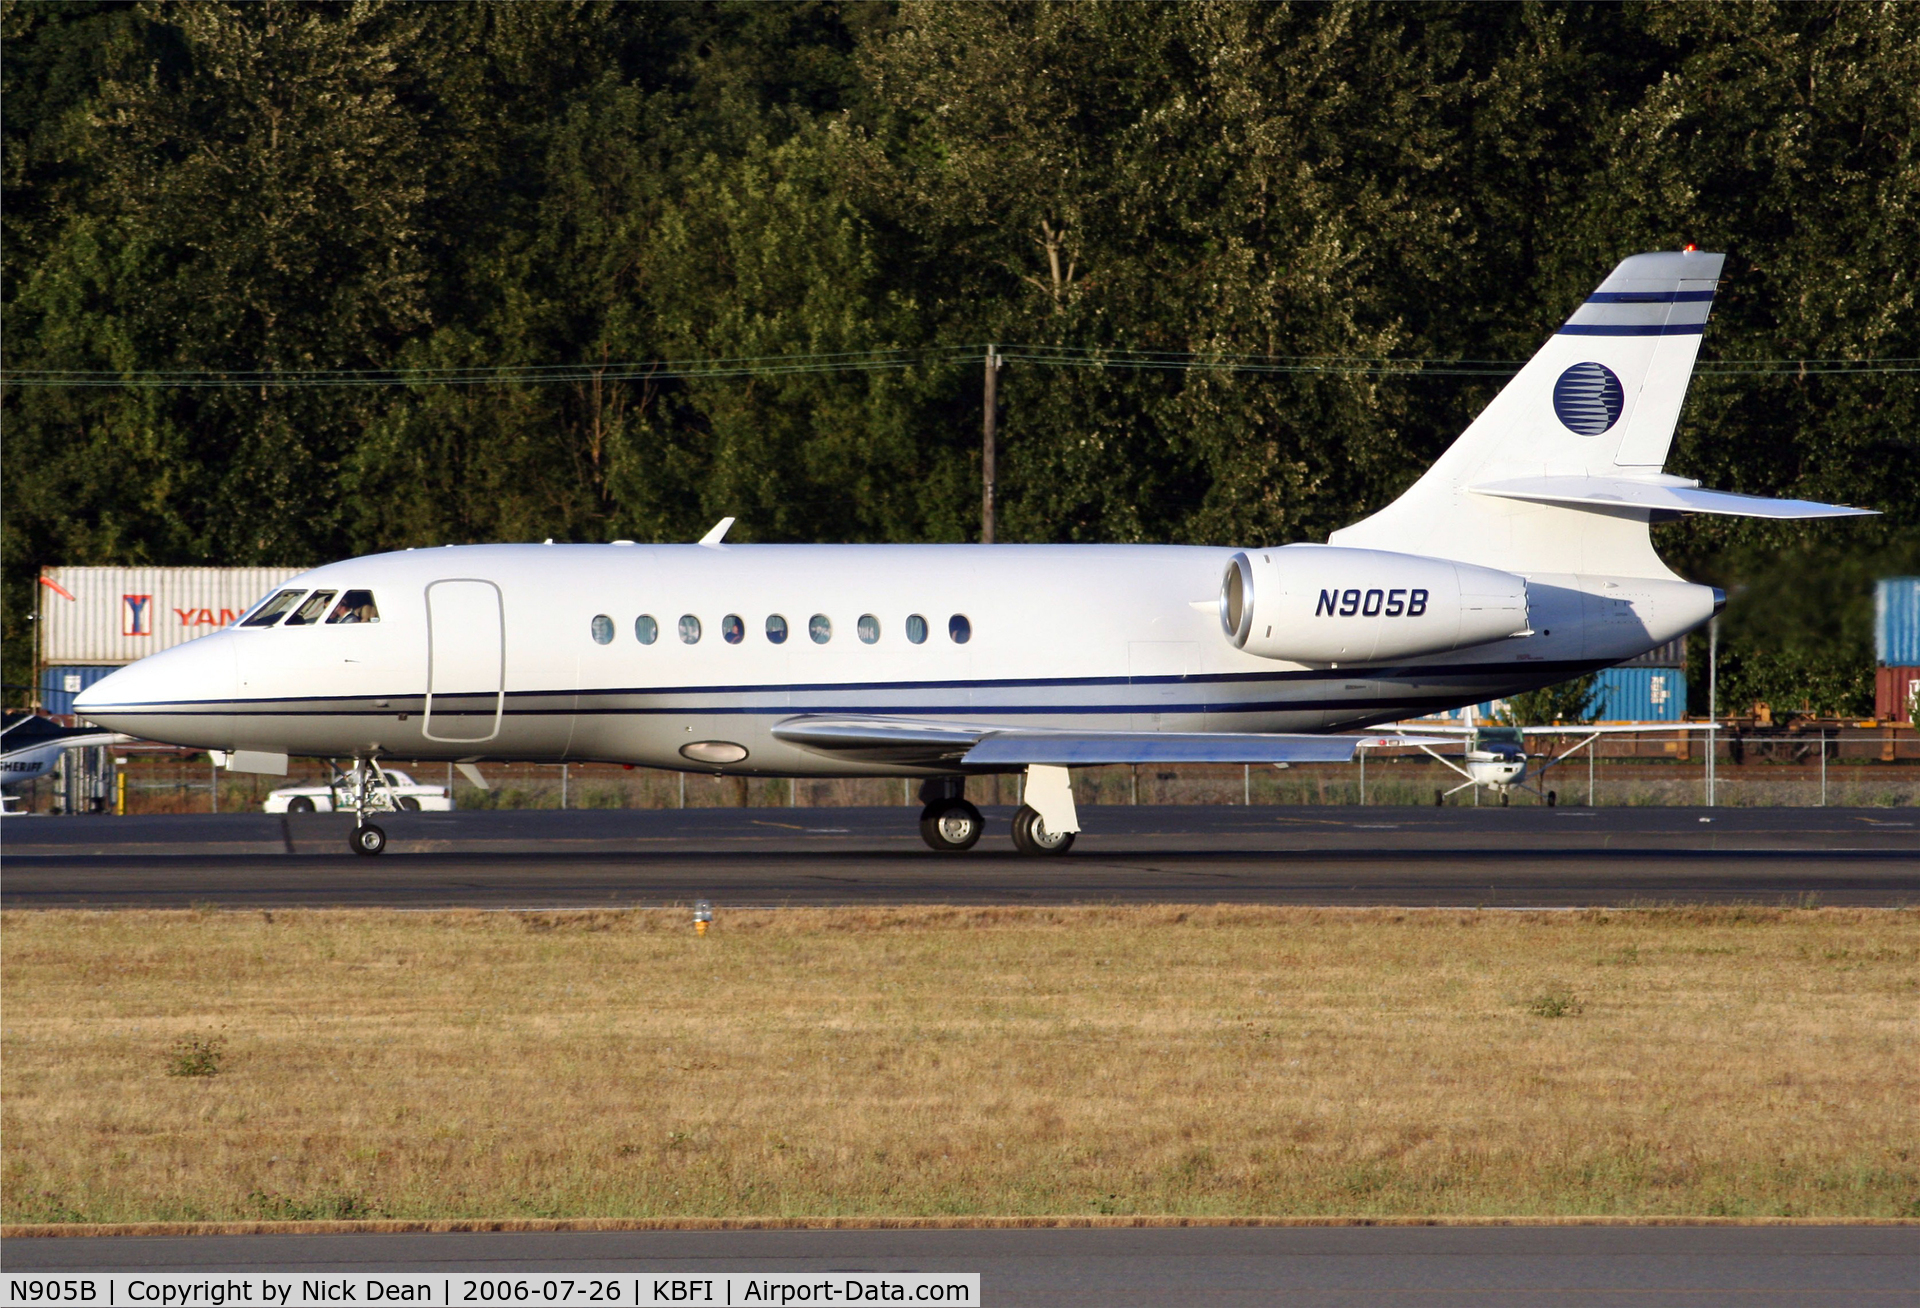 N905B, 2000 Dassault Falcon 2000 C/N 132, KBFI